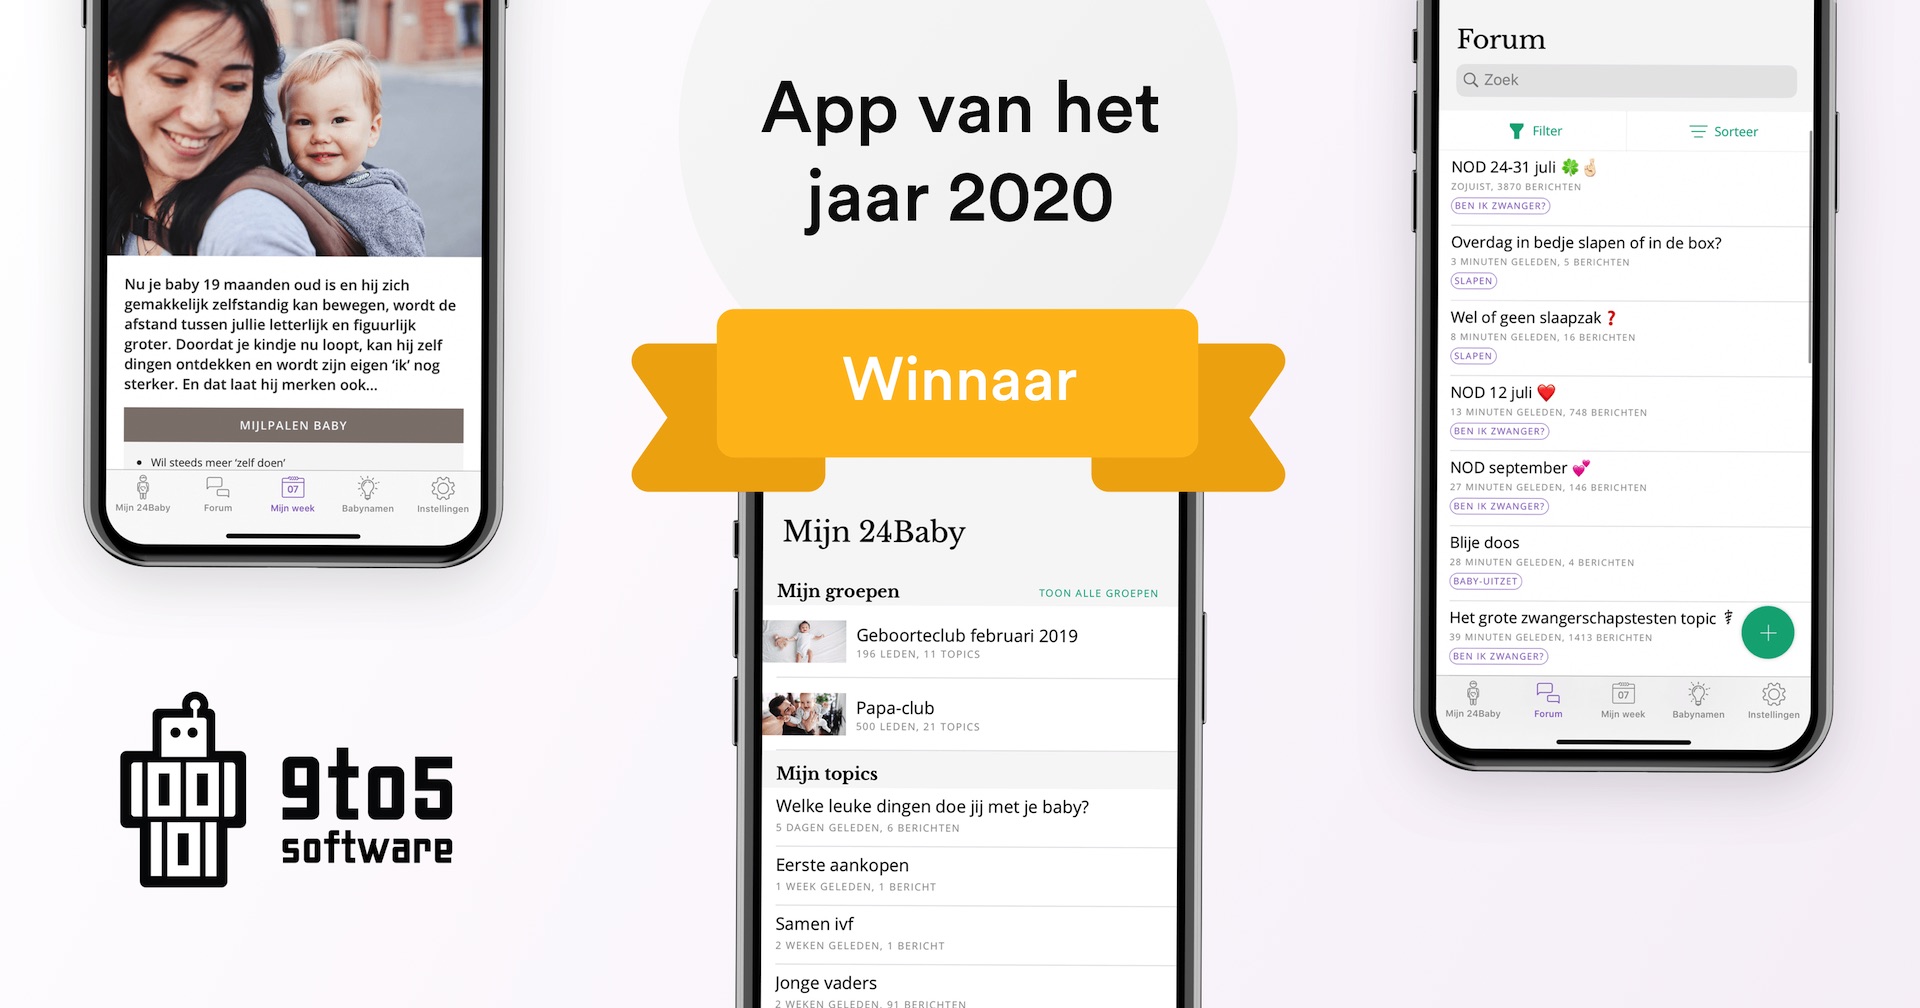 Winnaar App van het Jaar 2020! 🎉 - Vandaag heeft de app die wij ontwikkeld hebben voor 24Baby.nl de prijs van 'App van het Jaar 2020' in de wacht gesleept.